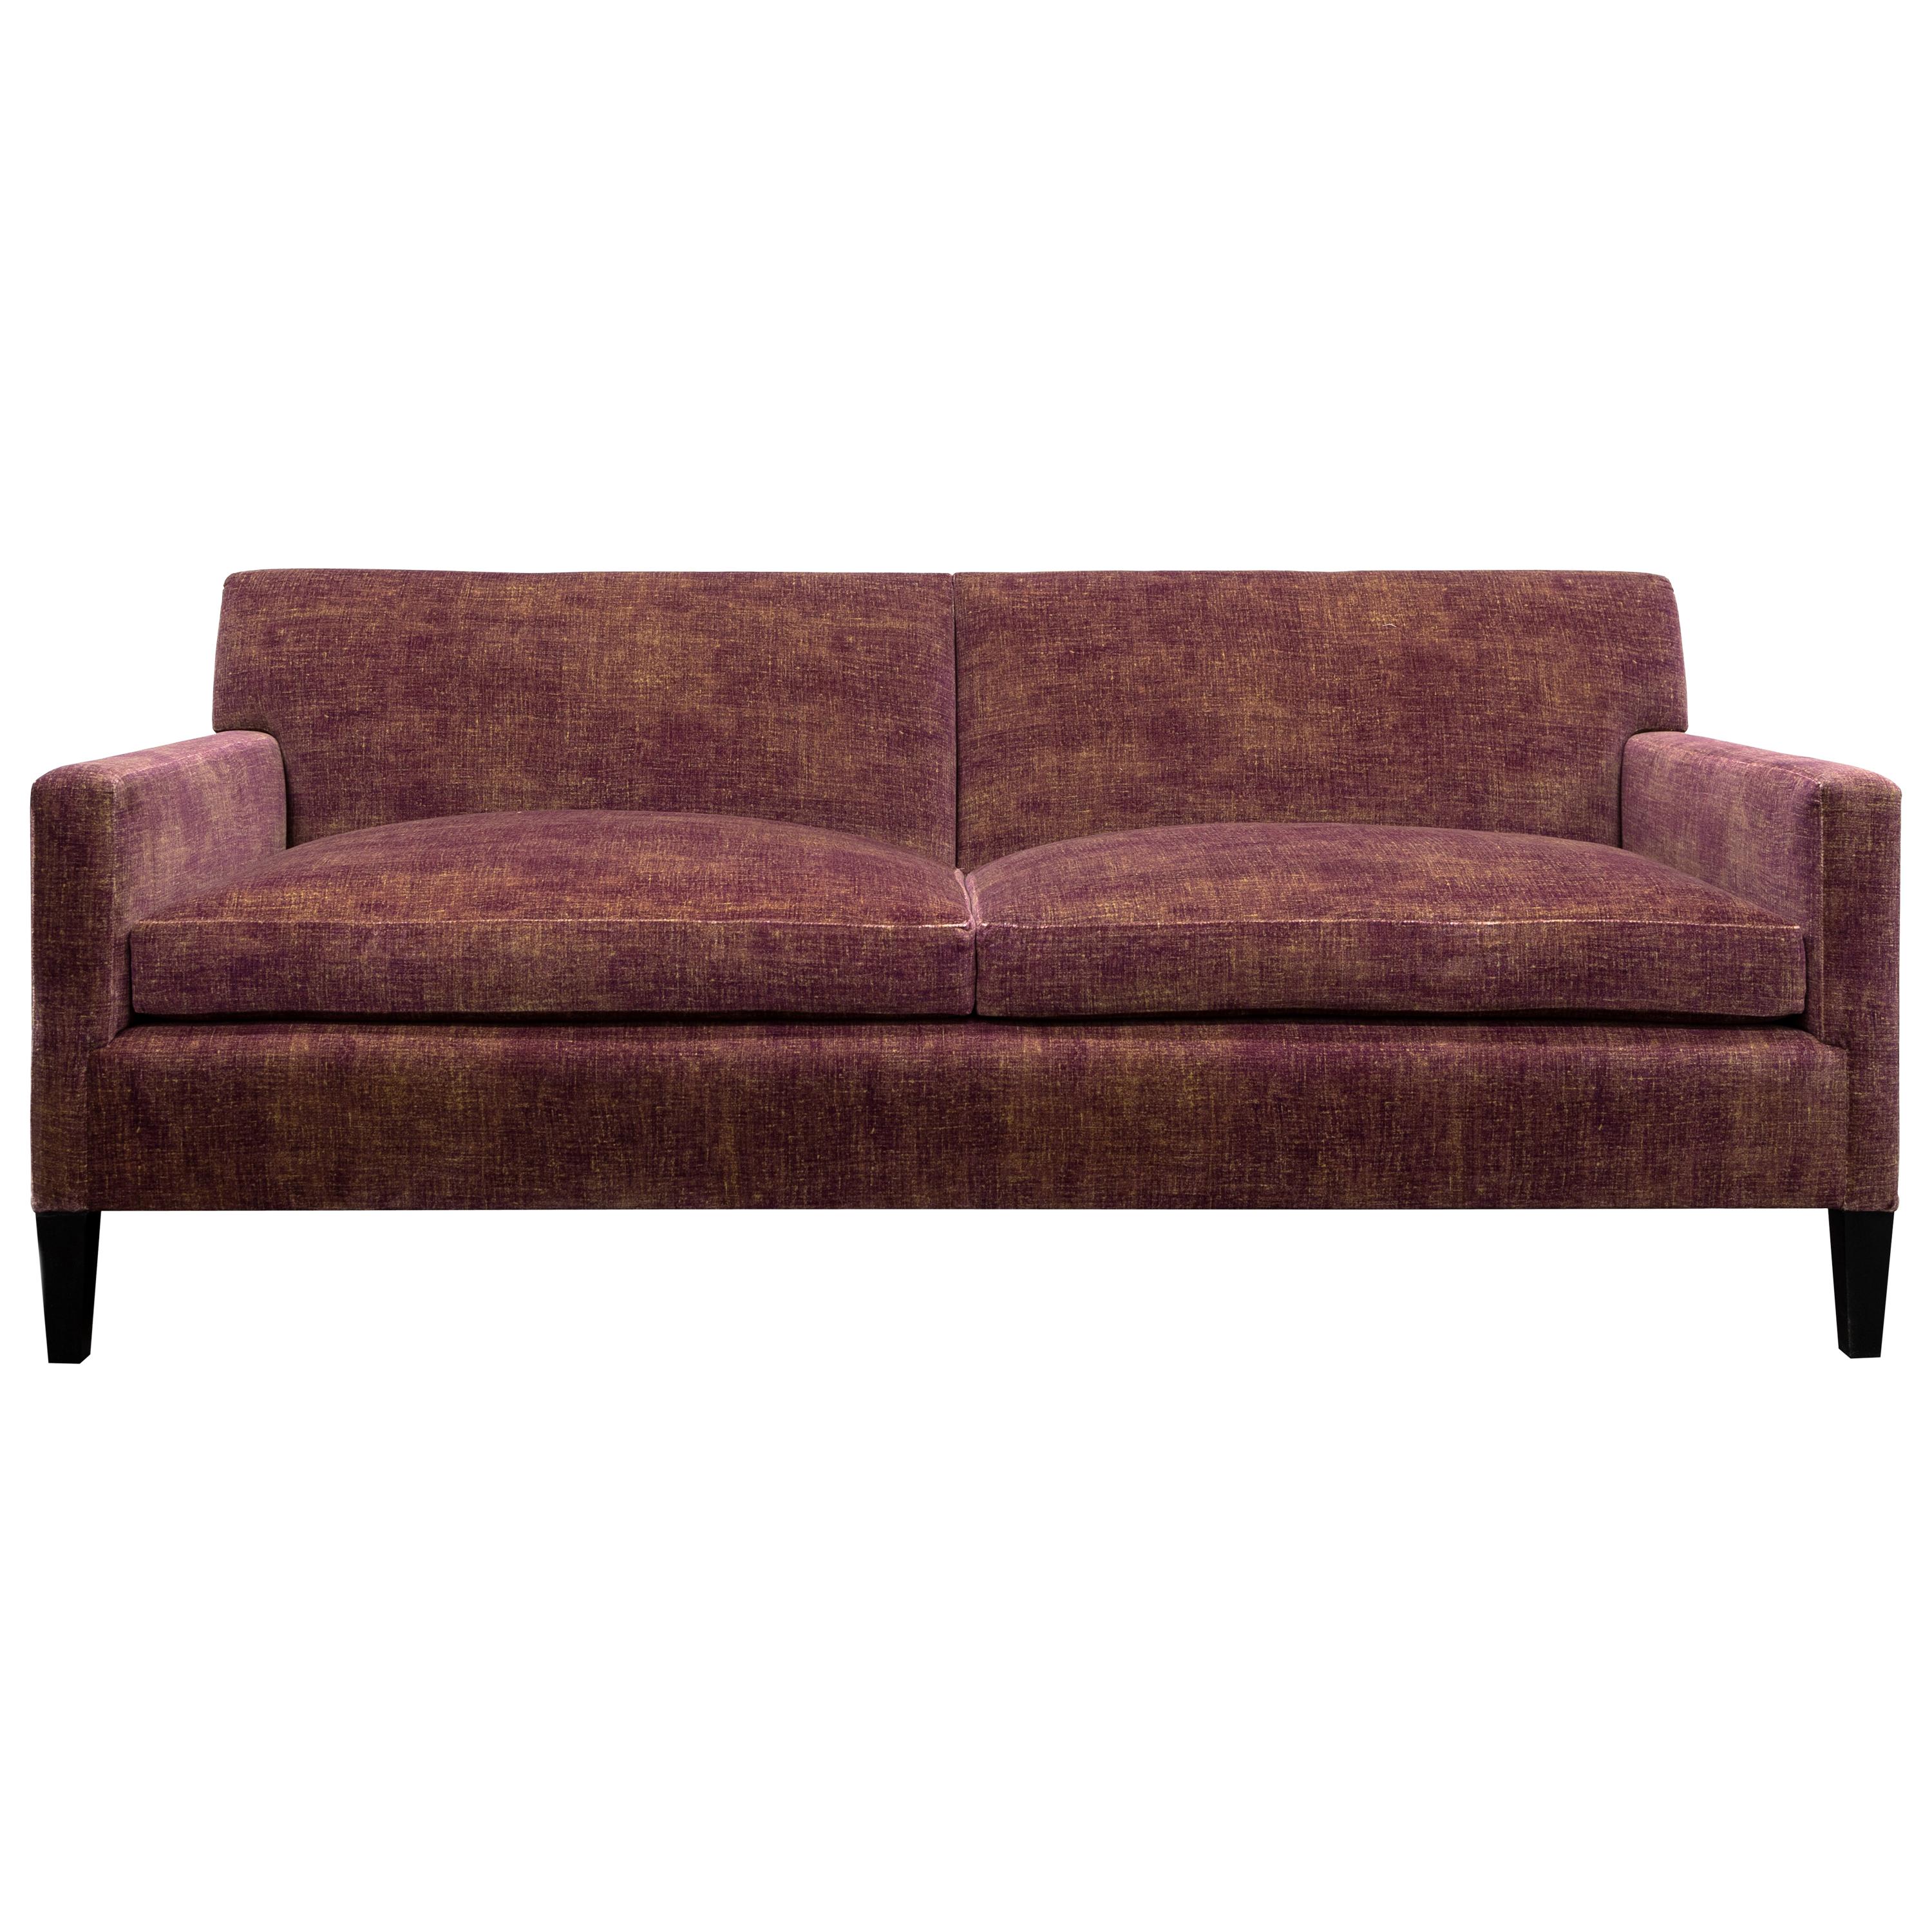 T-Back Upholstered Sofa in Cotton Velvet, Vica designed by Annabelle Selldorf